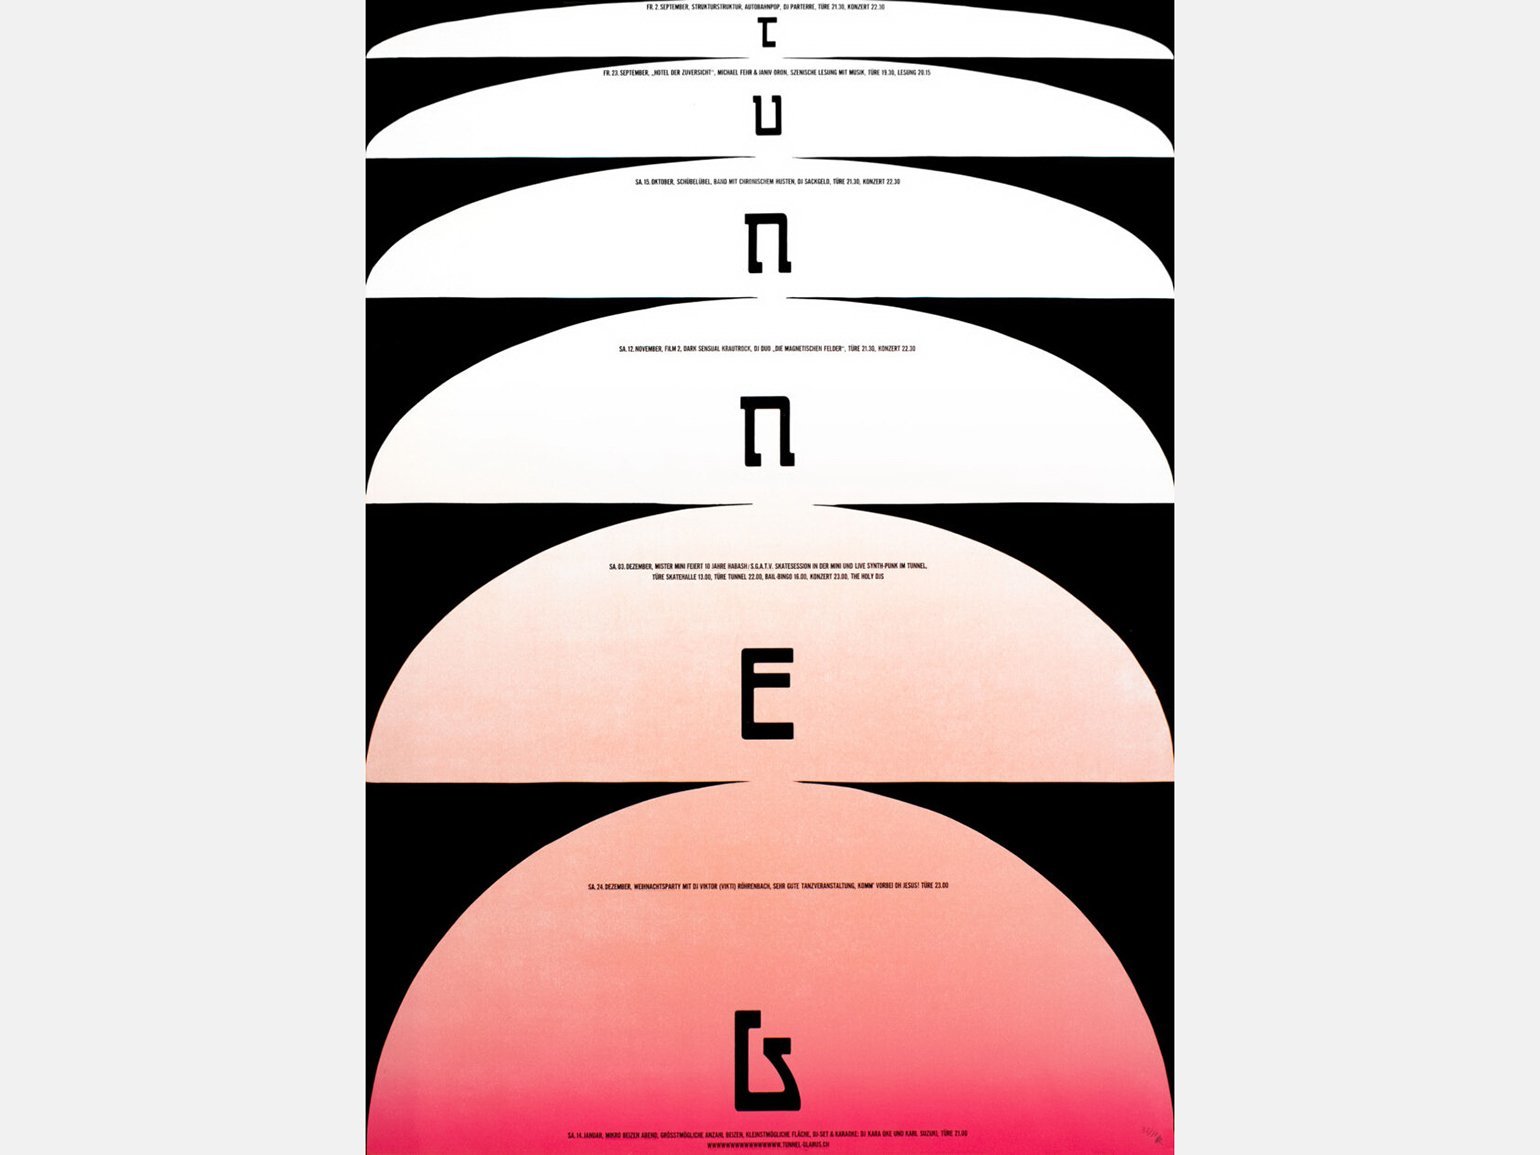 дизайн плаката с полукругами и полуовалами с градиентом розового и шрифтом латиницы, напоминающим иврит